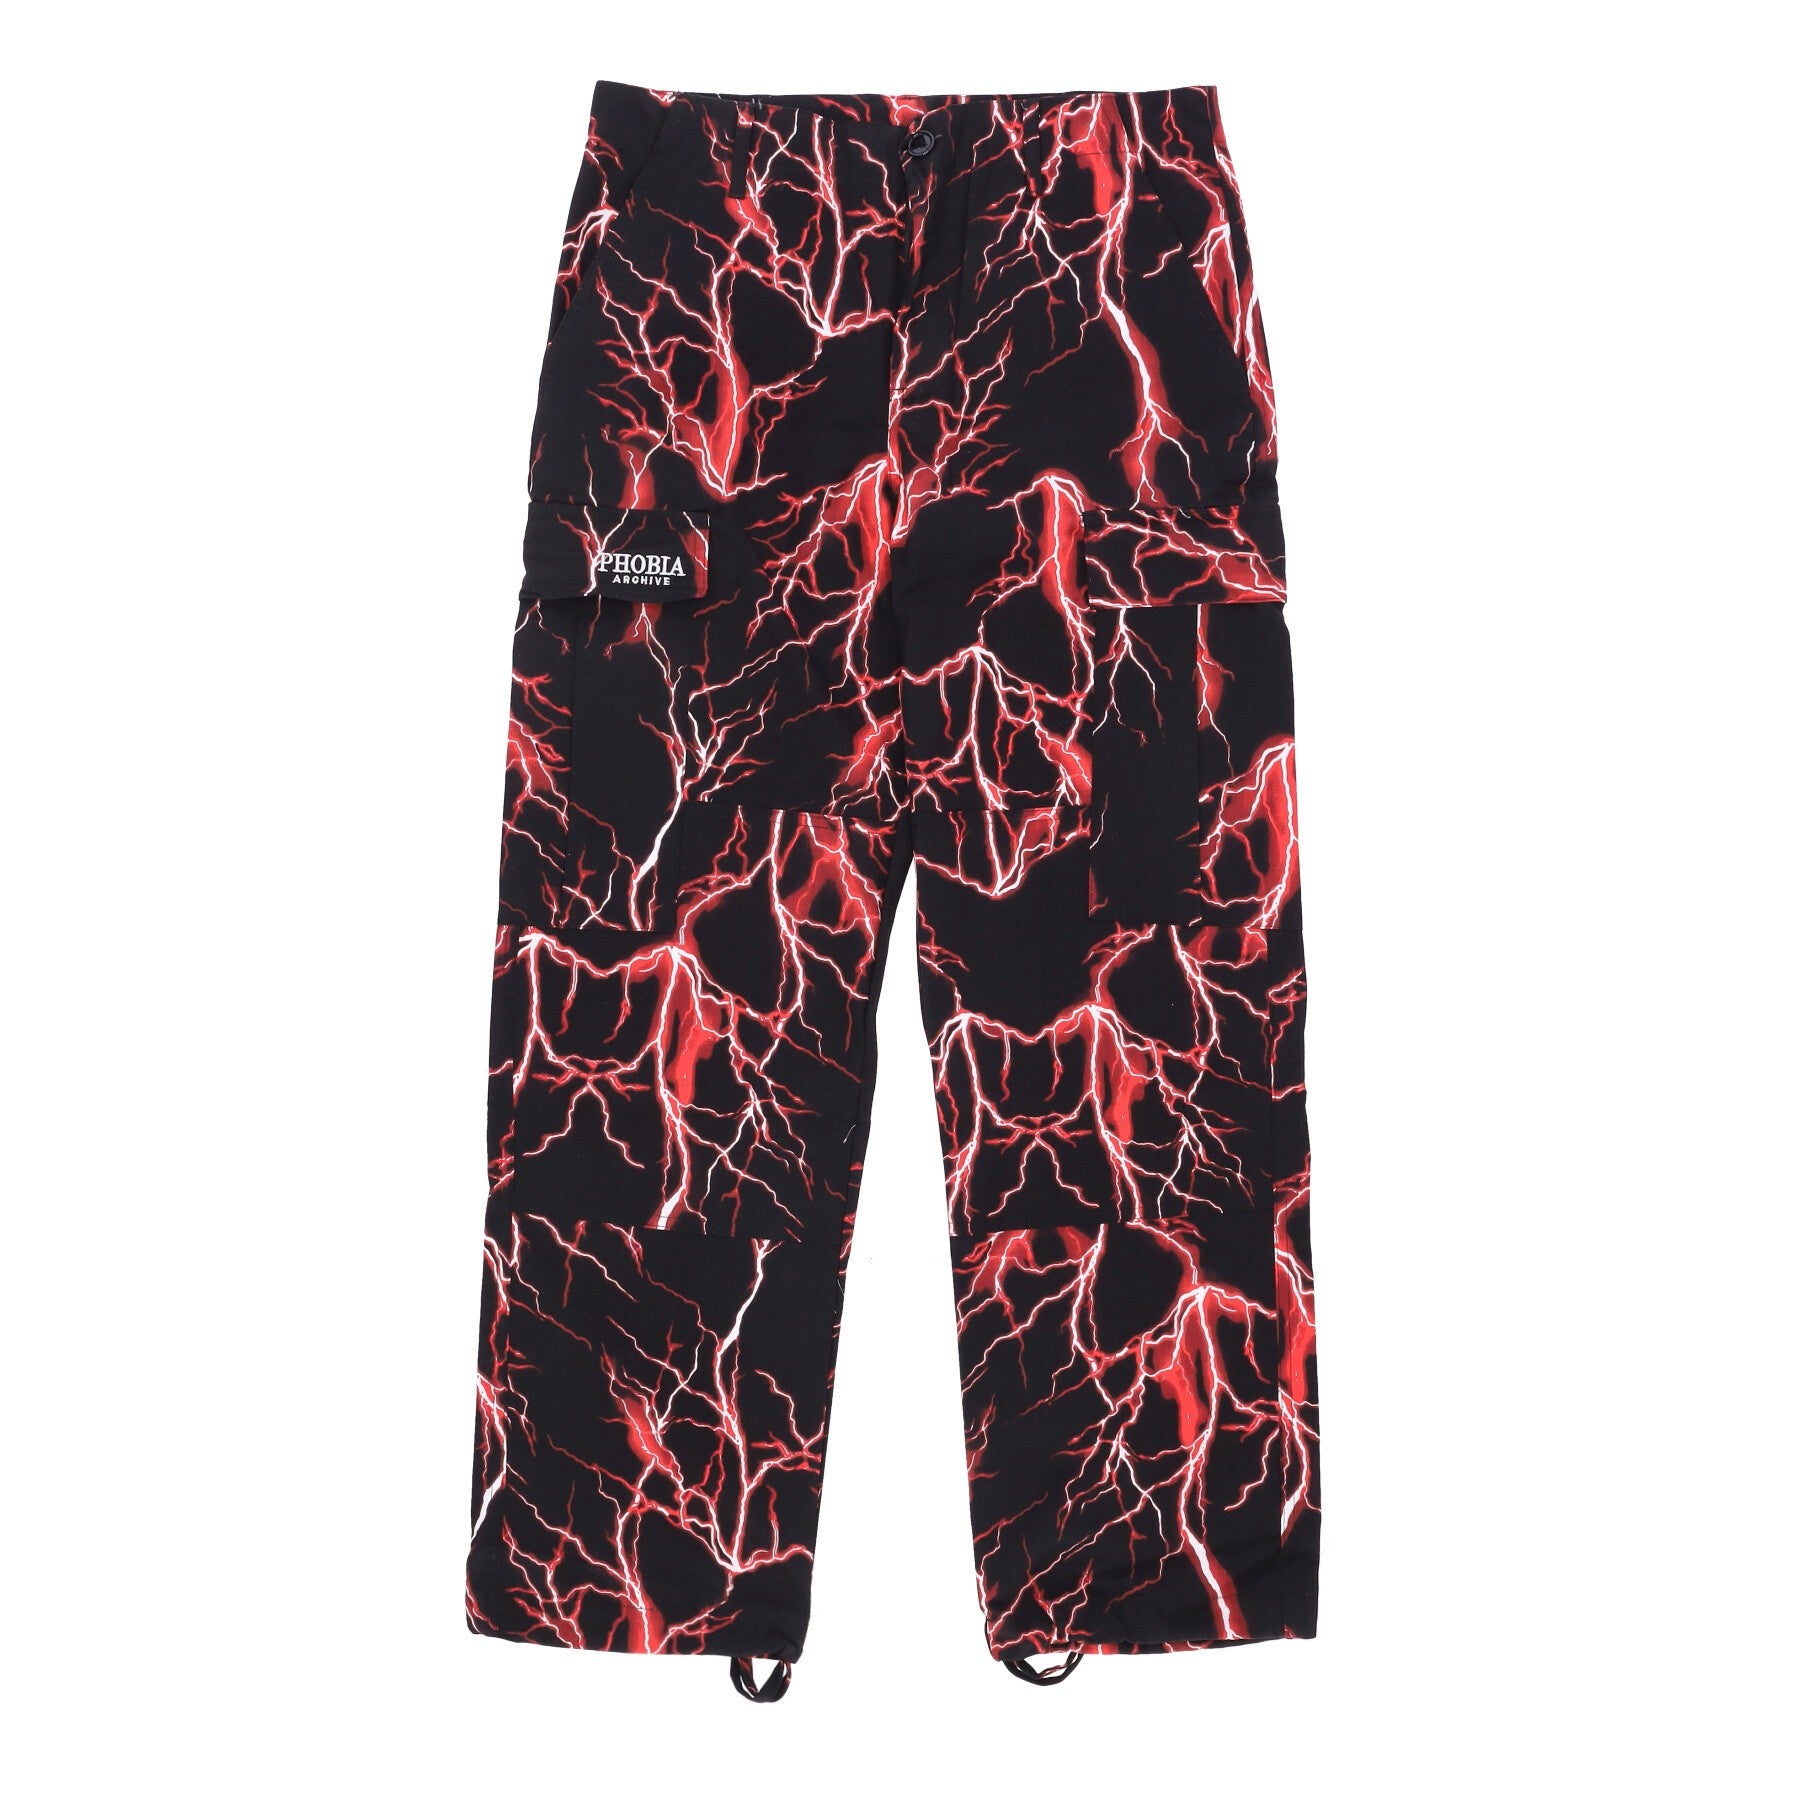 Phobia, Pantalone Lungo Uomo Lightning Cargo Pants, Black/red